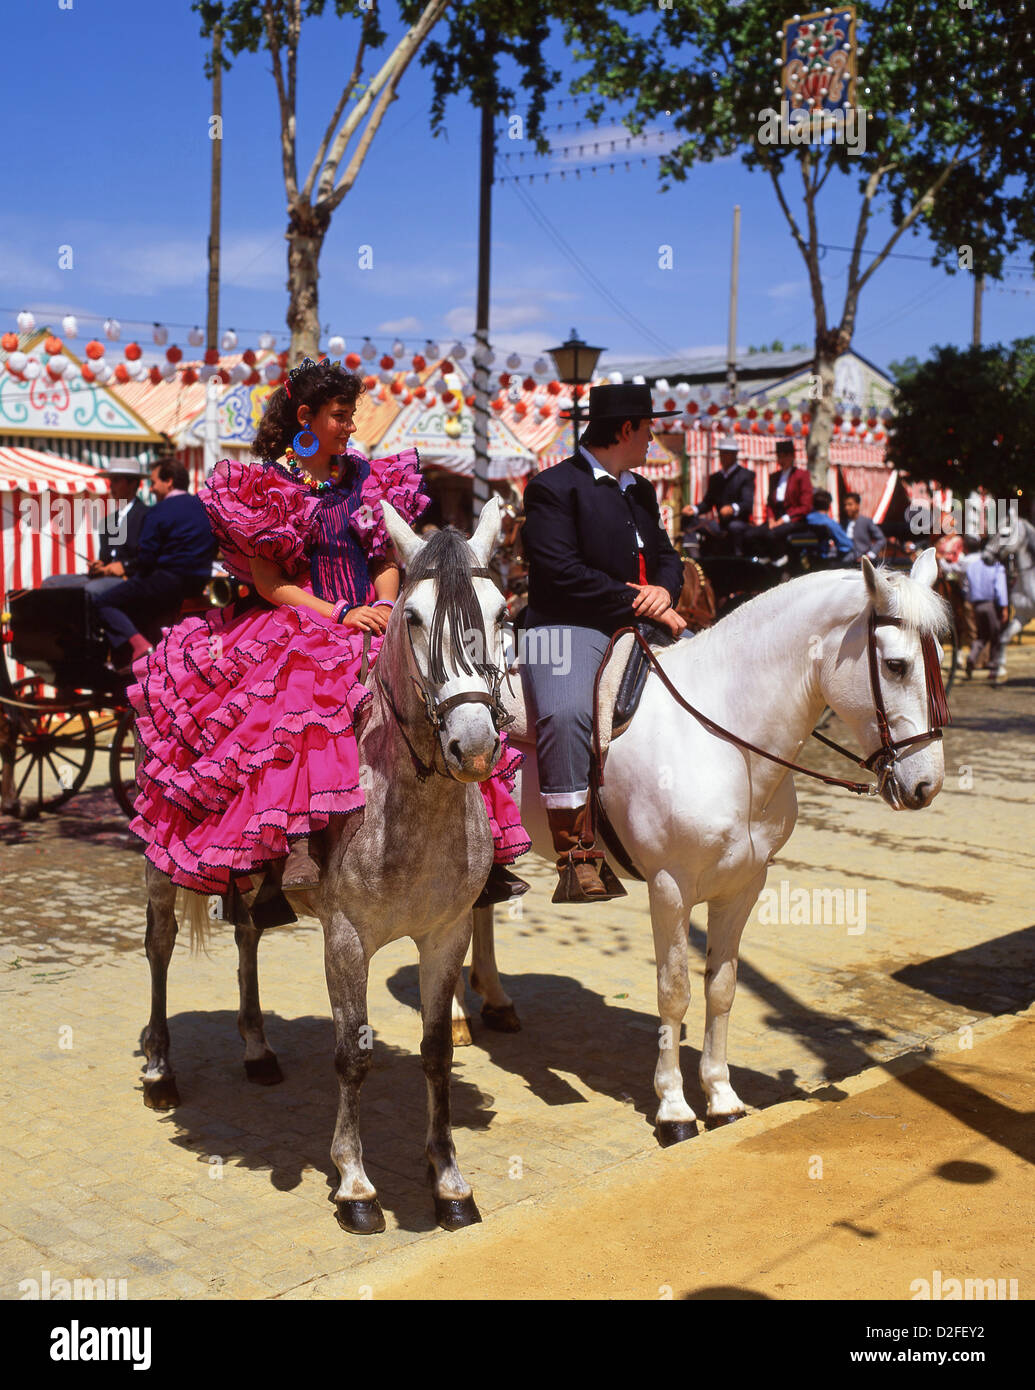 Feria De Abril De Utrera En La Decoración Y Los Caballos De Sevilla Foto de  archivo - Imagen de ambiente, traje: 77843608